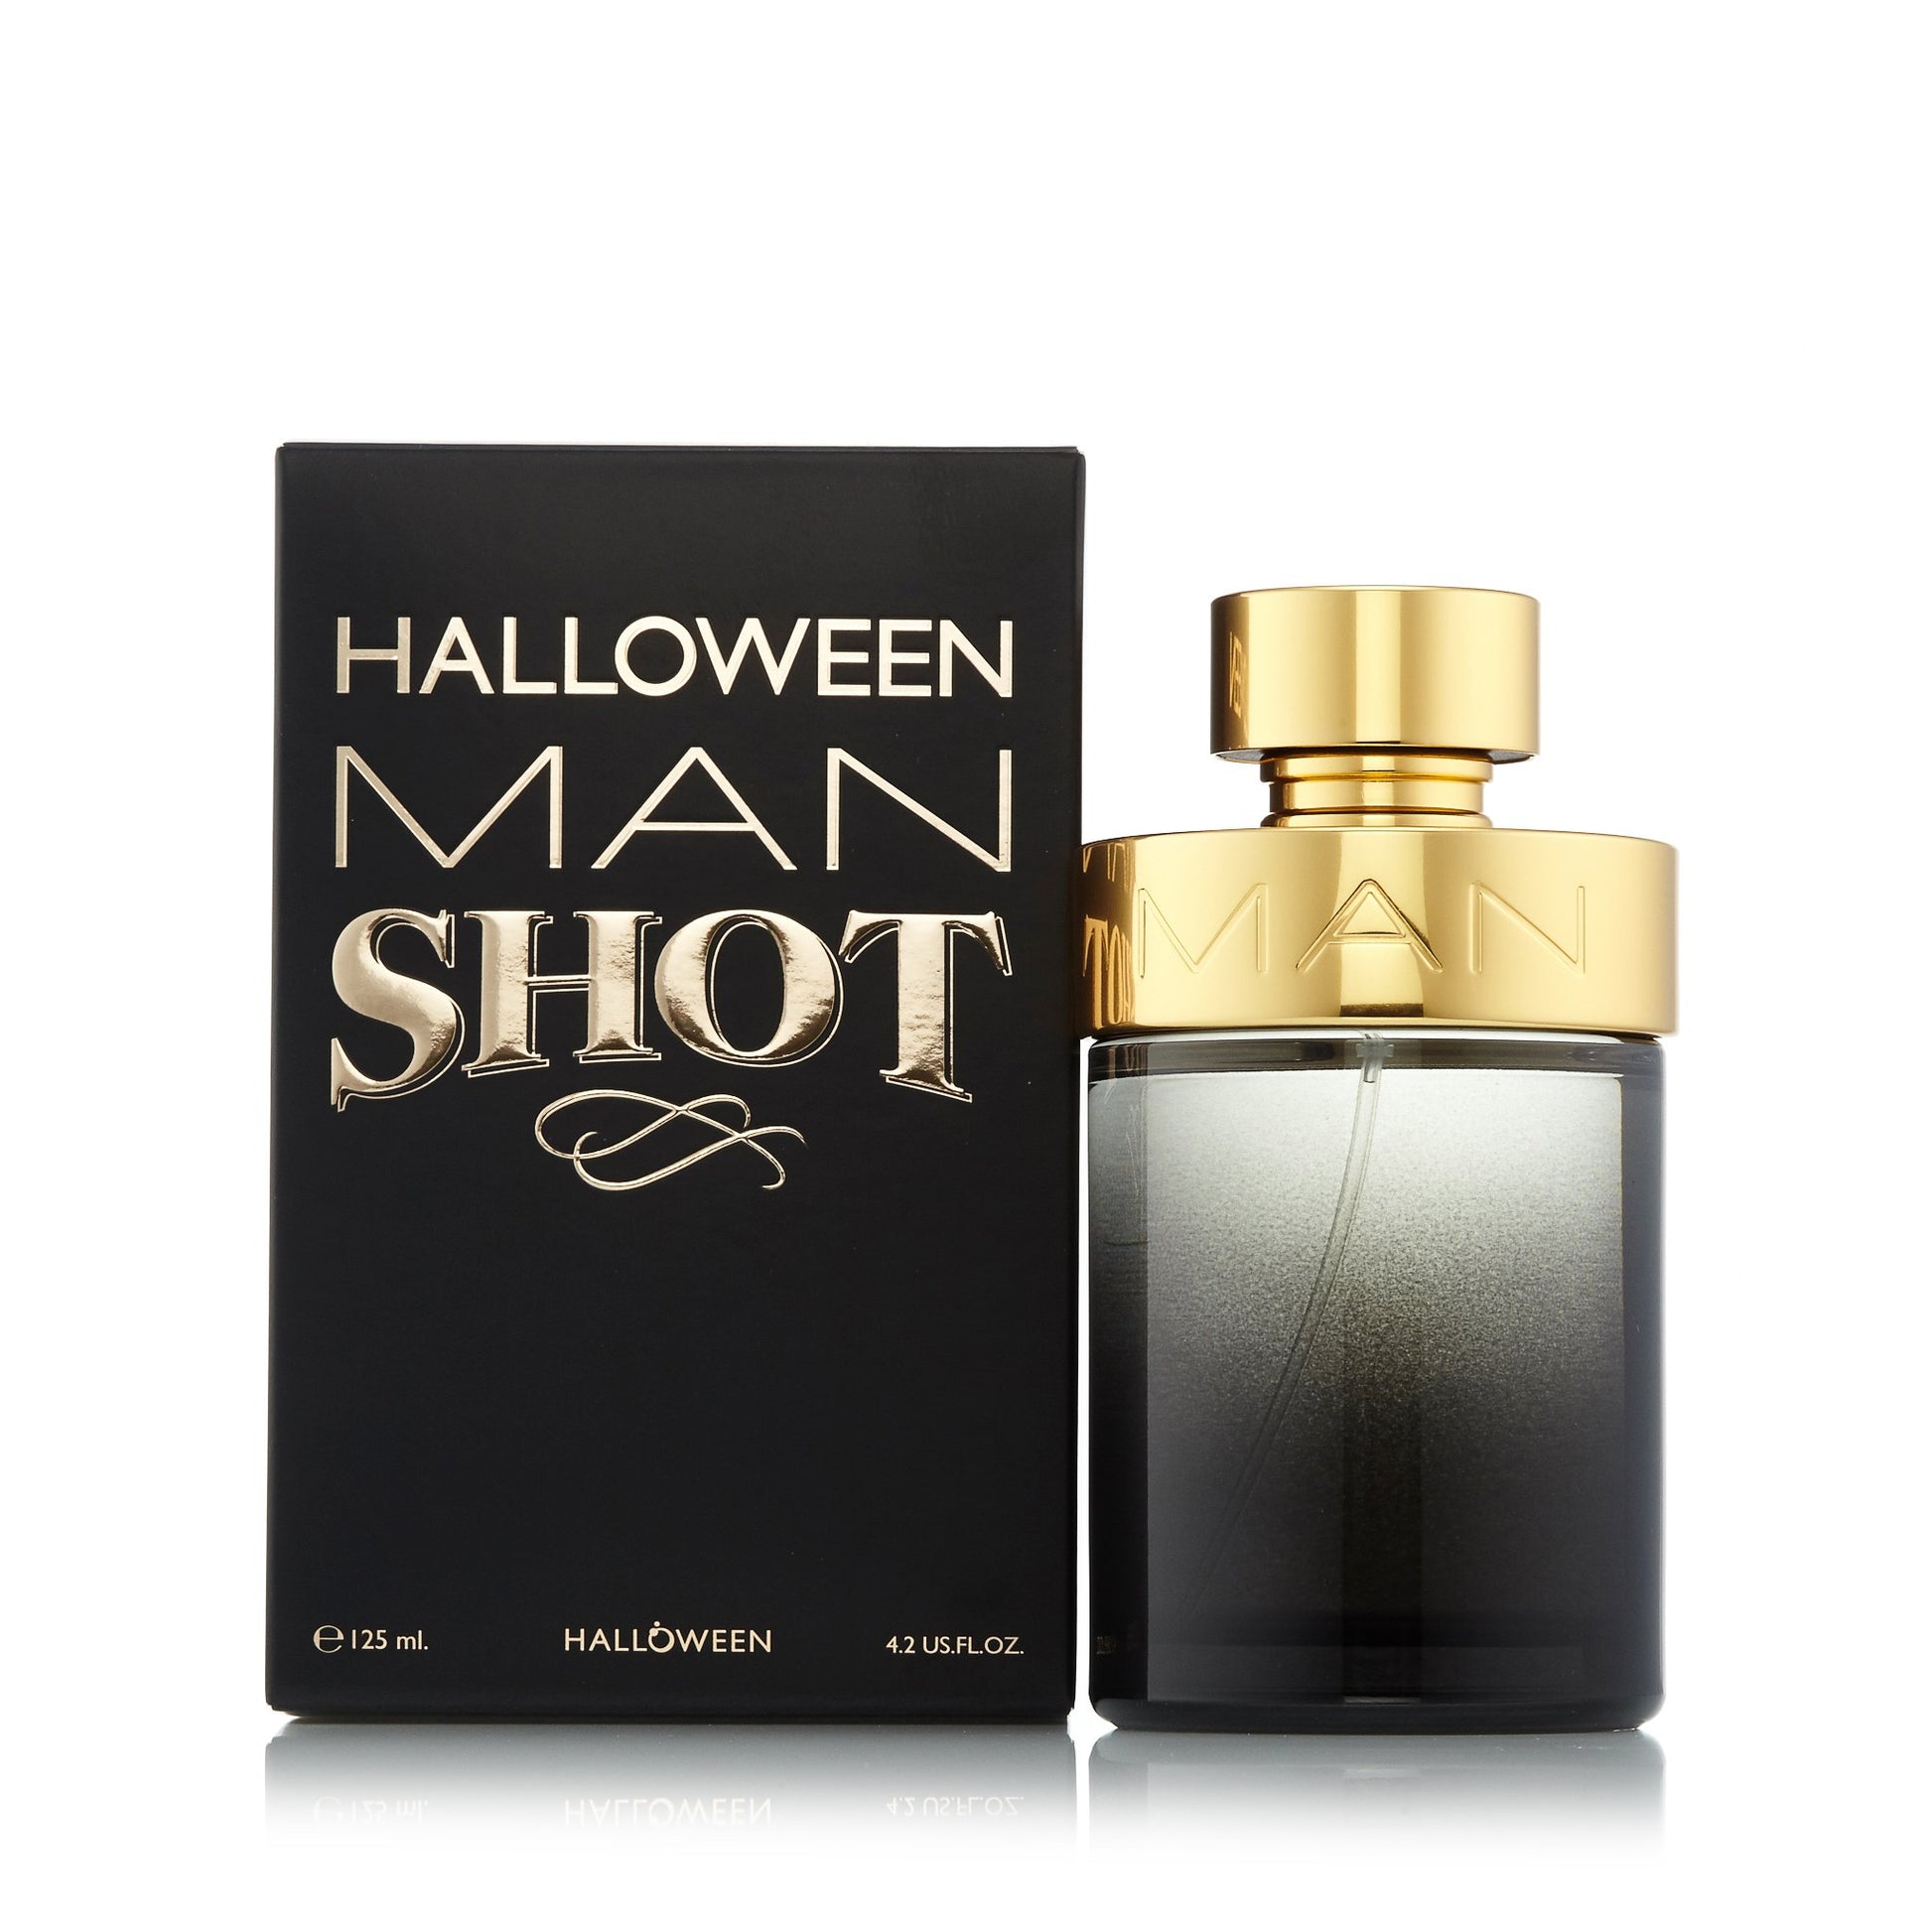 Halloween Man Shot Eau de Toilette Spray for Men by Jesus Del Pozo 4.2 oz. Click to open in modal